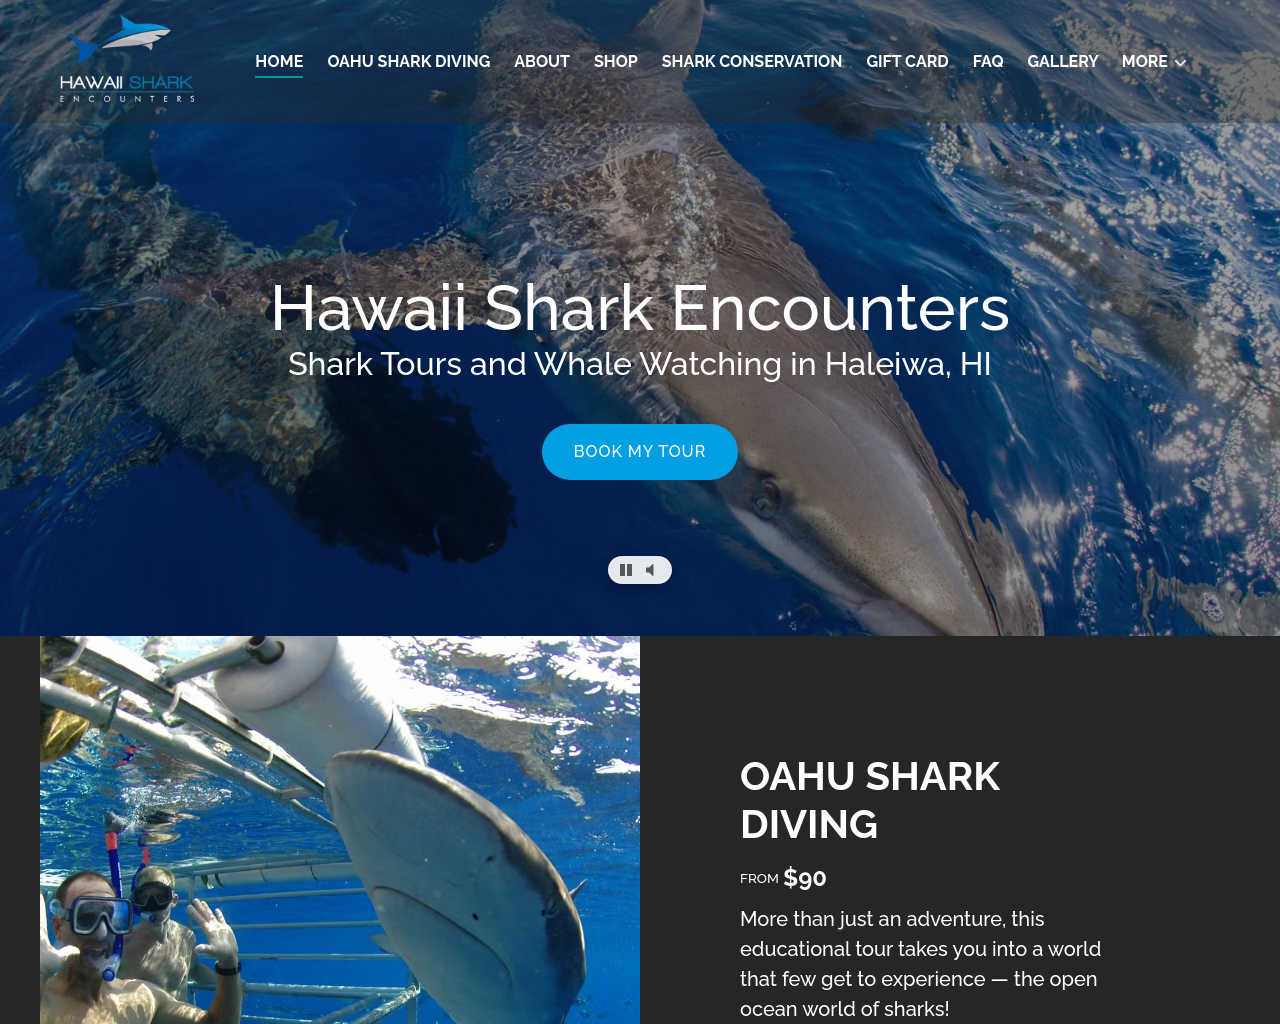 hawaiisharkencounters.com